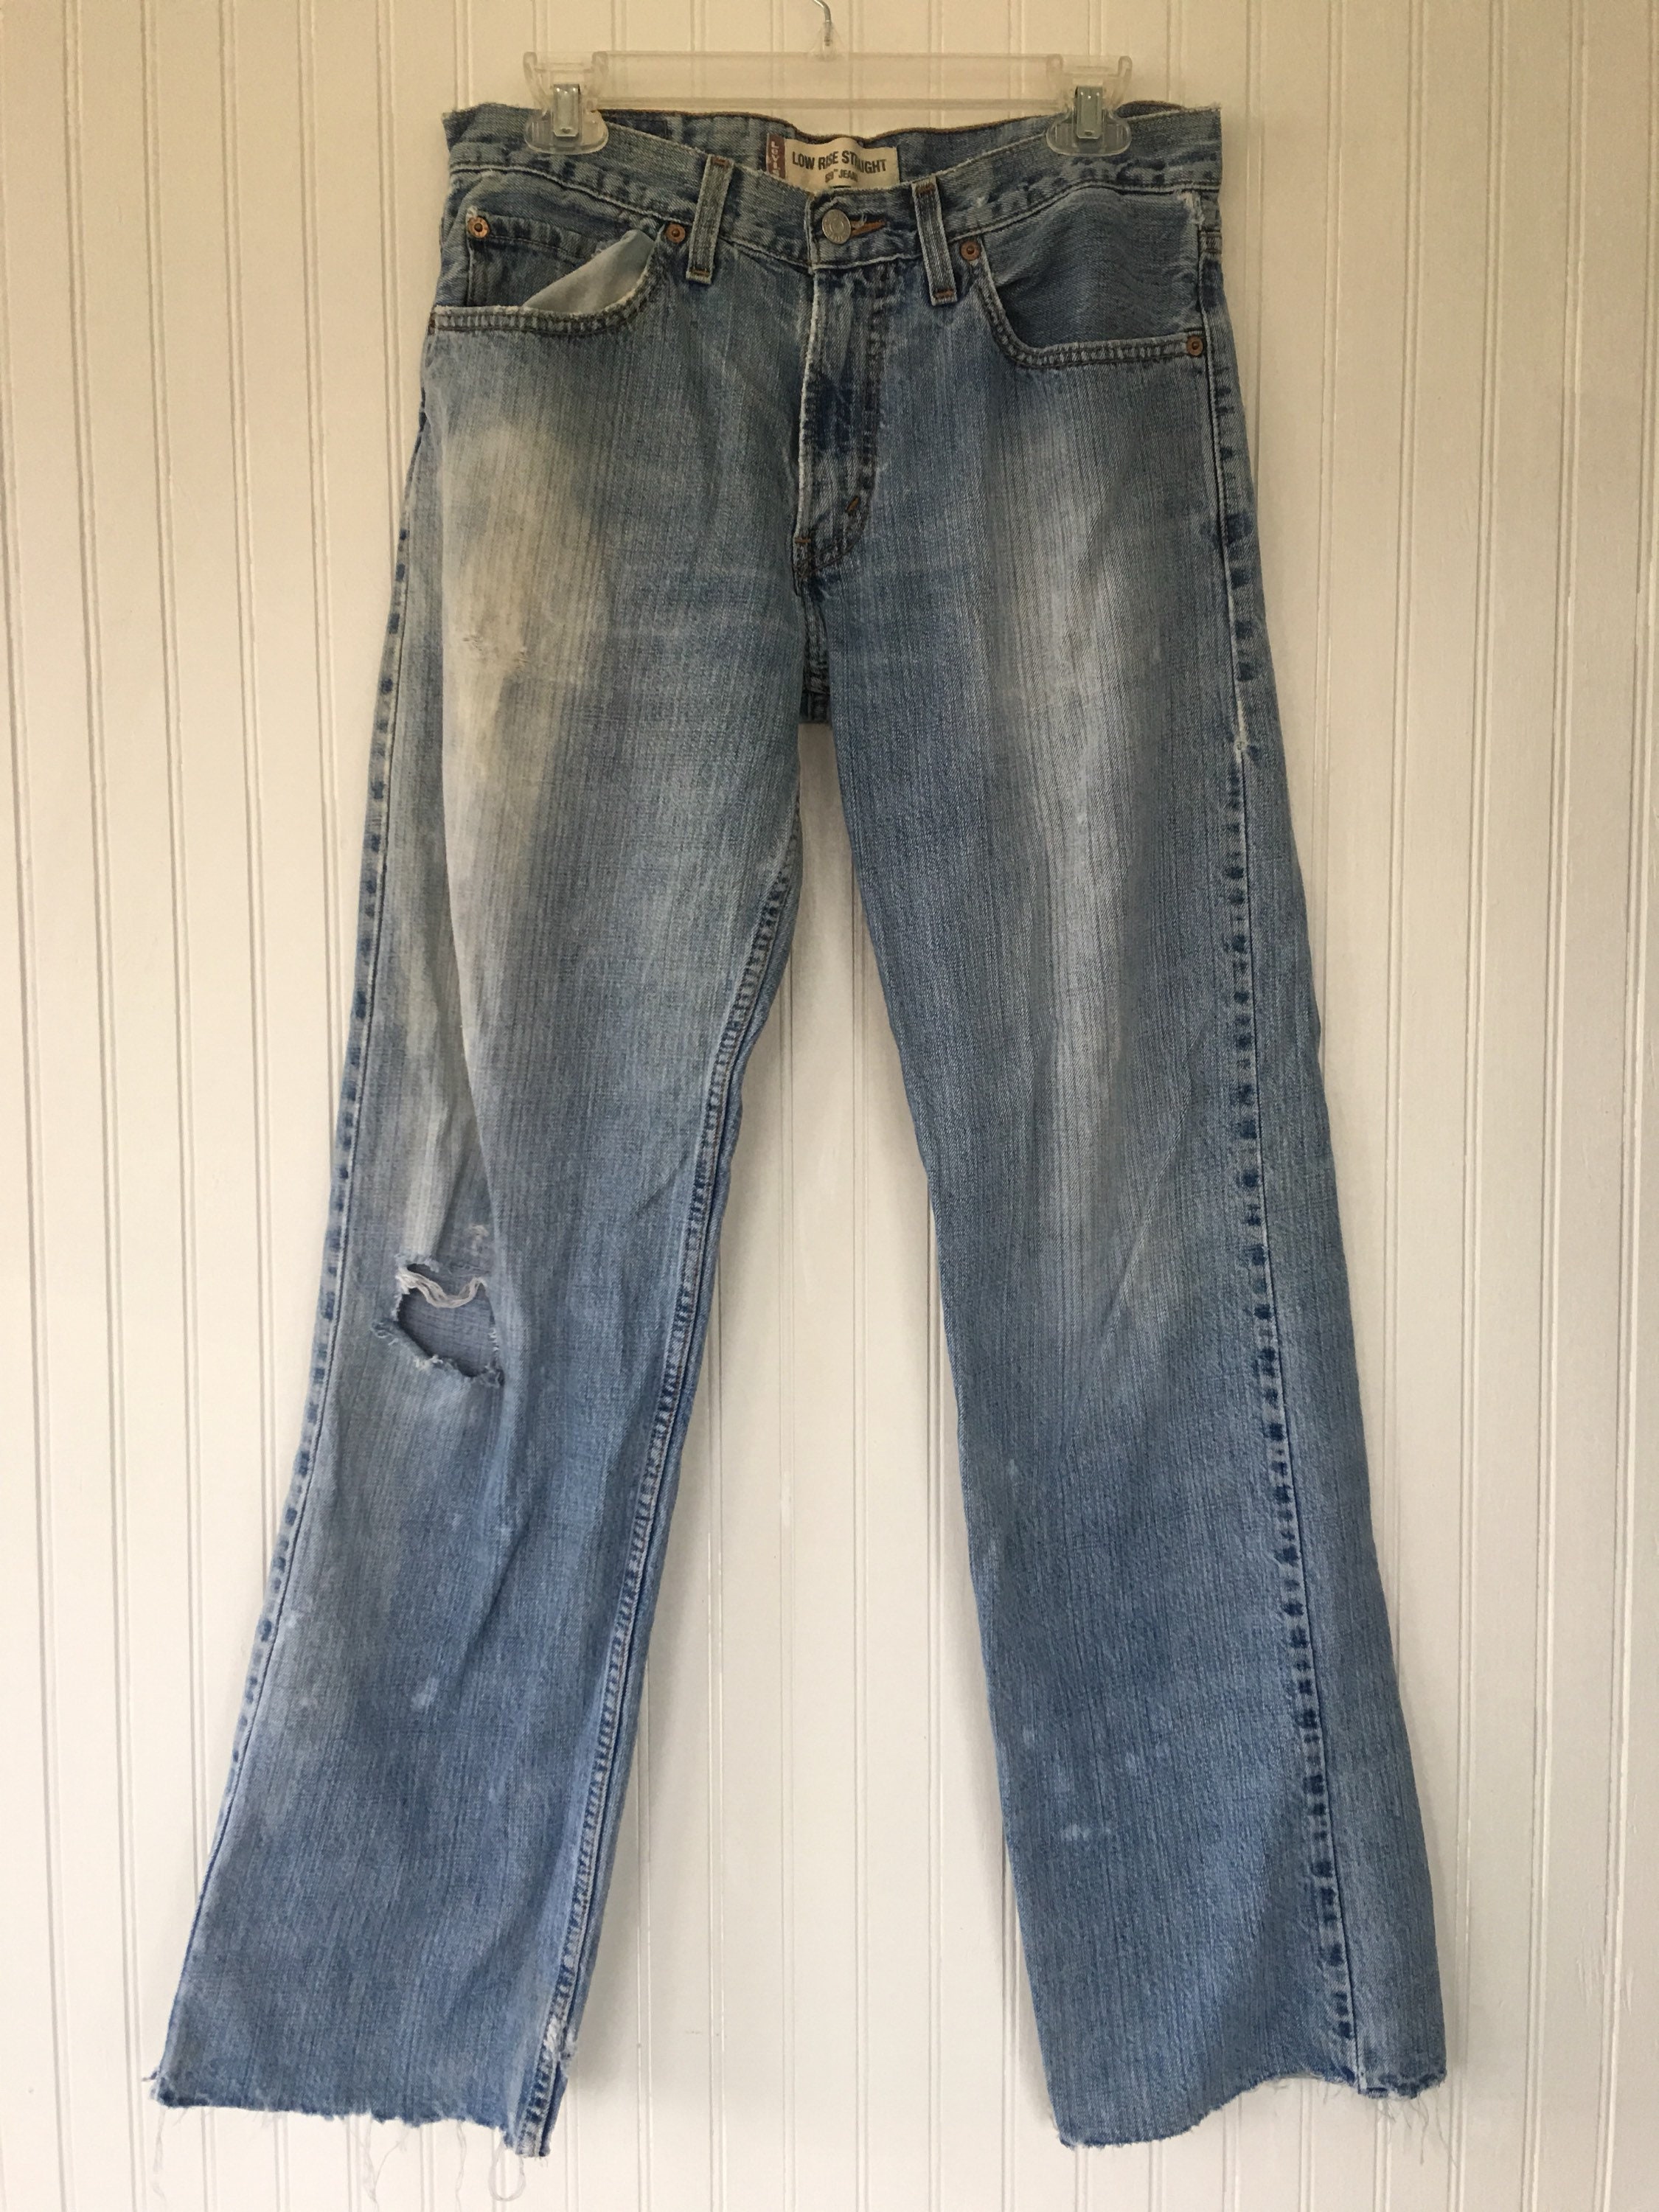 Vintage 90s Levis 529 Grunge Blue Jeans Holes Frayed Hem Bleach ...